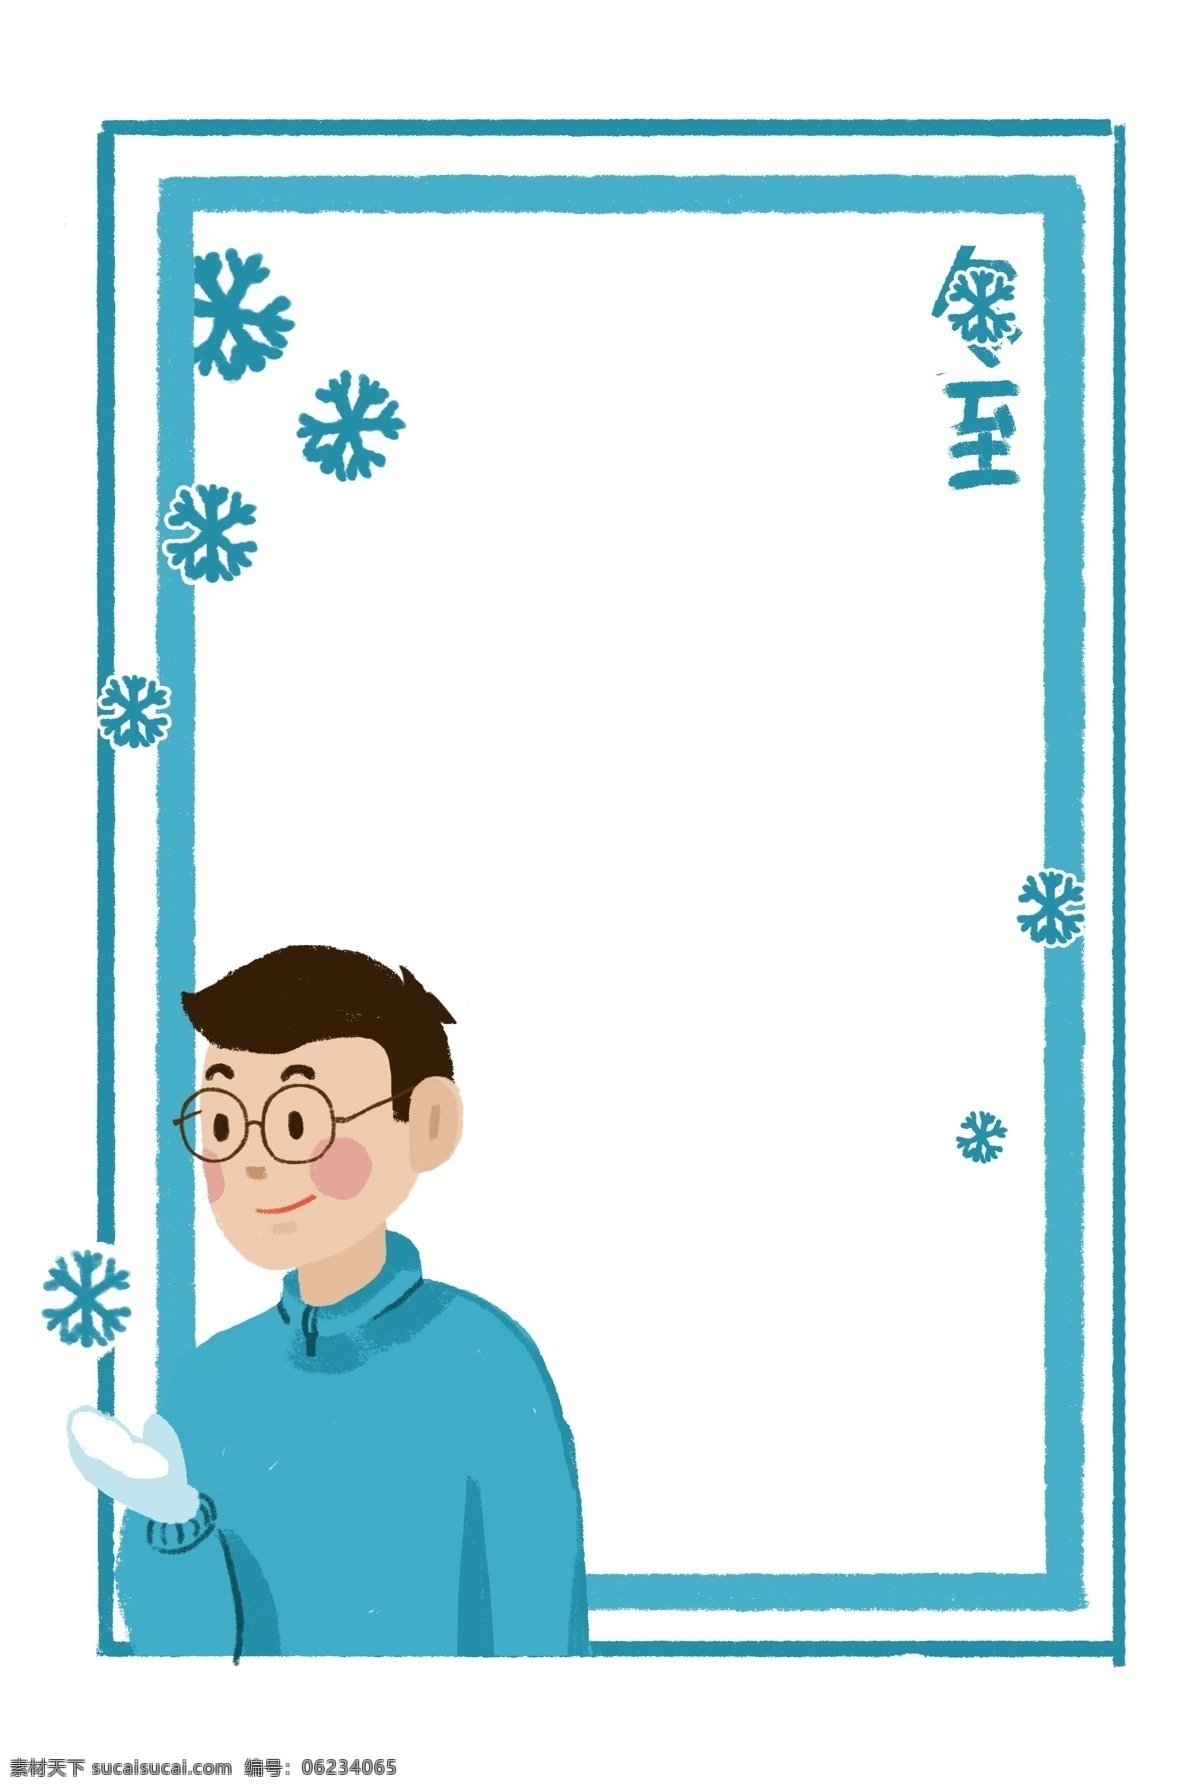 冬至 蓝色 人物 边框 插画 冬至边框 蓝色的边框 手绘边框 卡通边框 蓝色的雪花